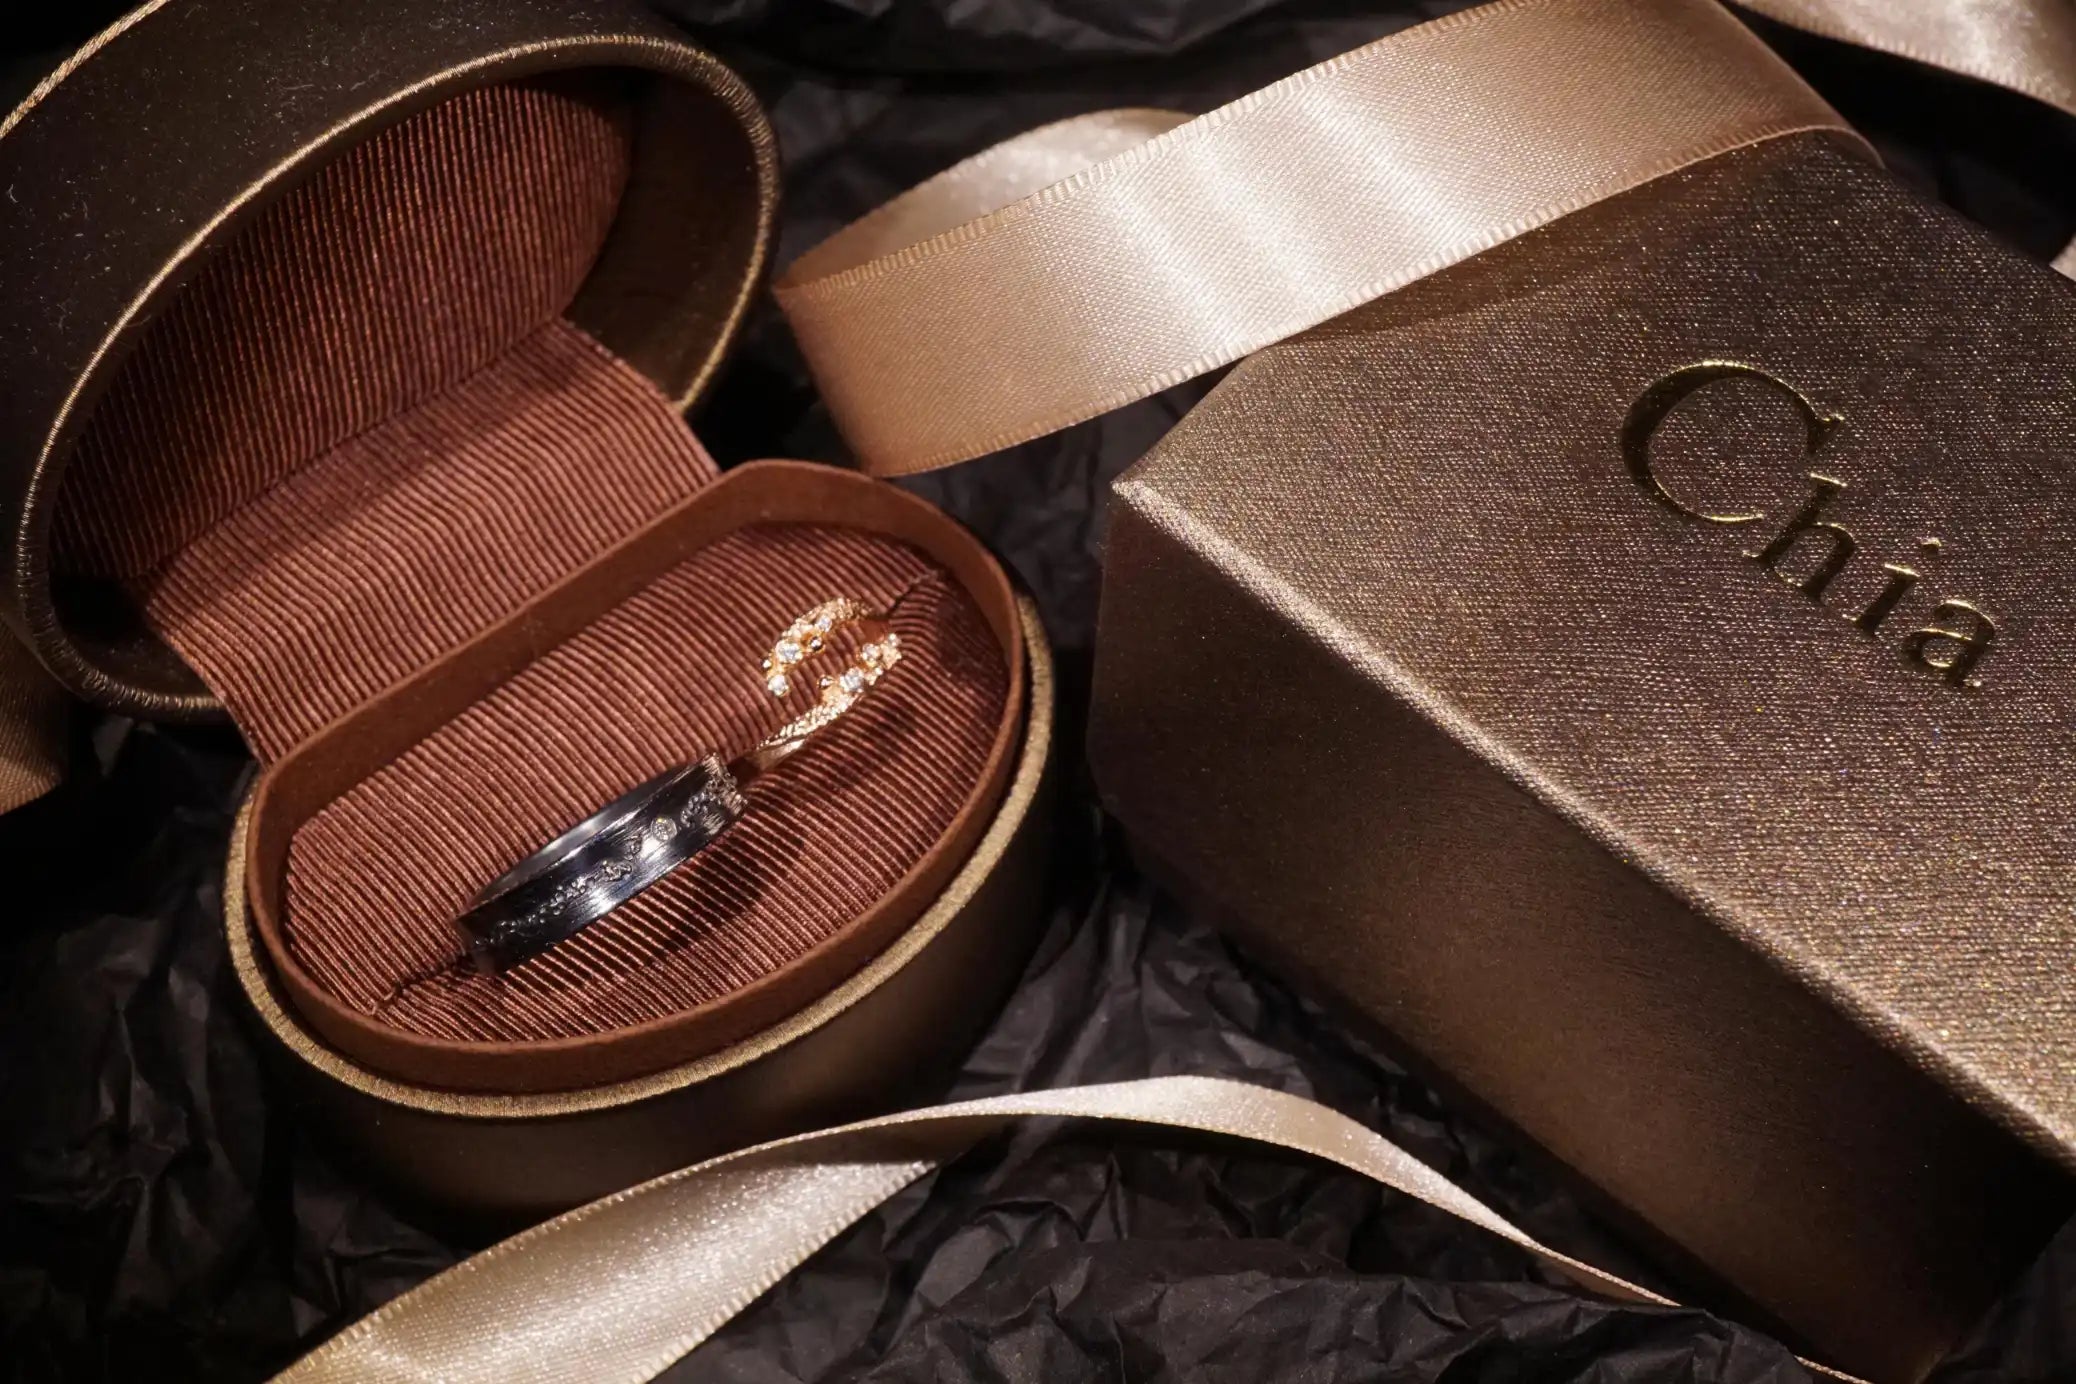 Chia Jewelry婚戒對戒訂製推薦分享，以流星雨夜空為設計主題，採用14k金、鑽石、純銀製作，獨一無二屬於你們的故事婚戒